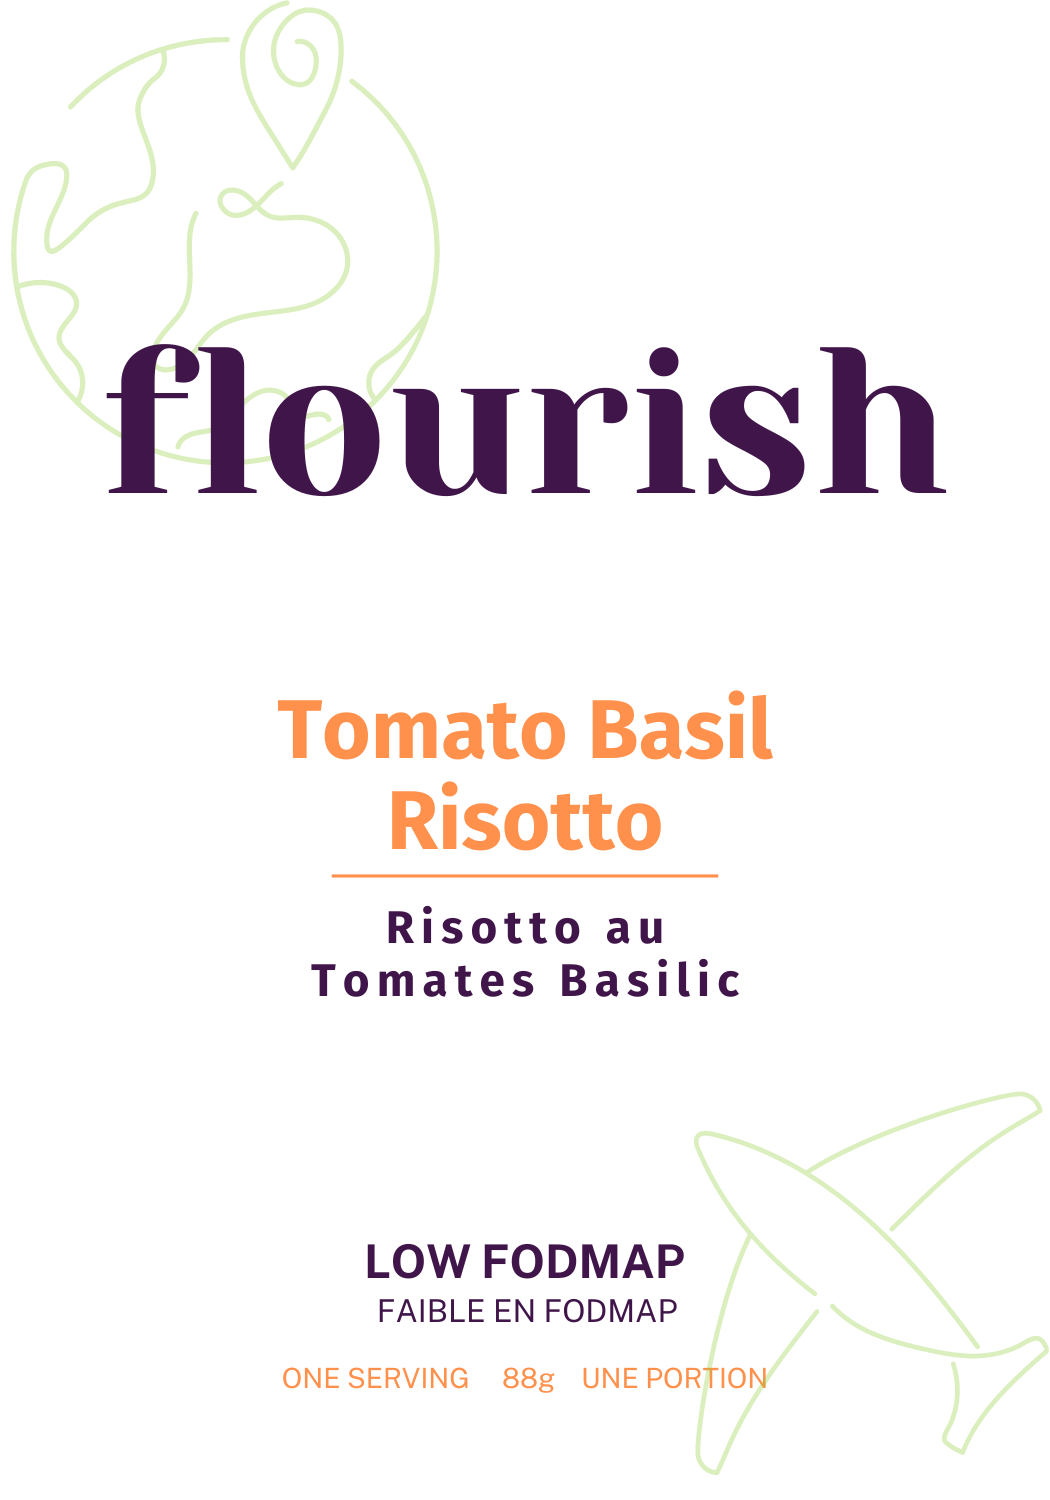 Tomato Basil Chicken Risotto